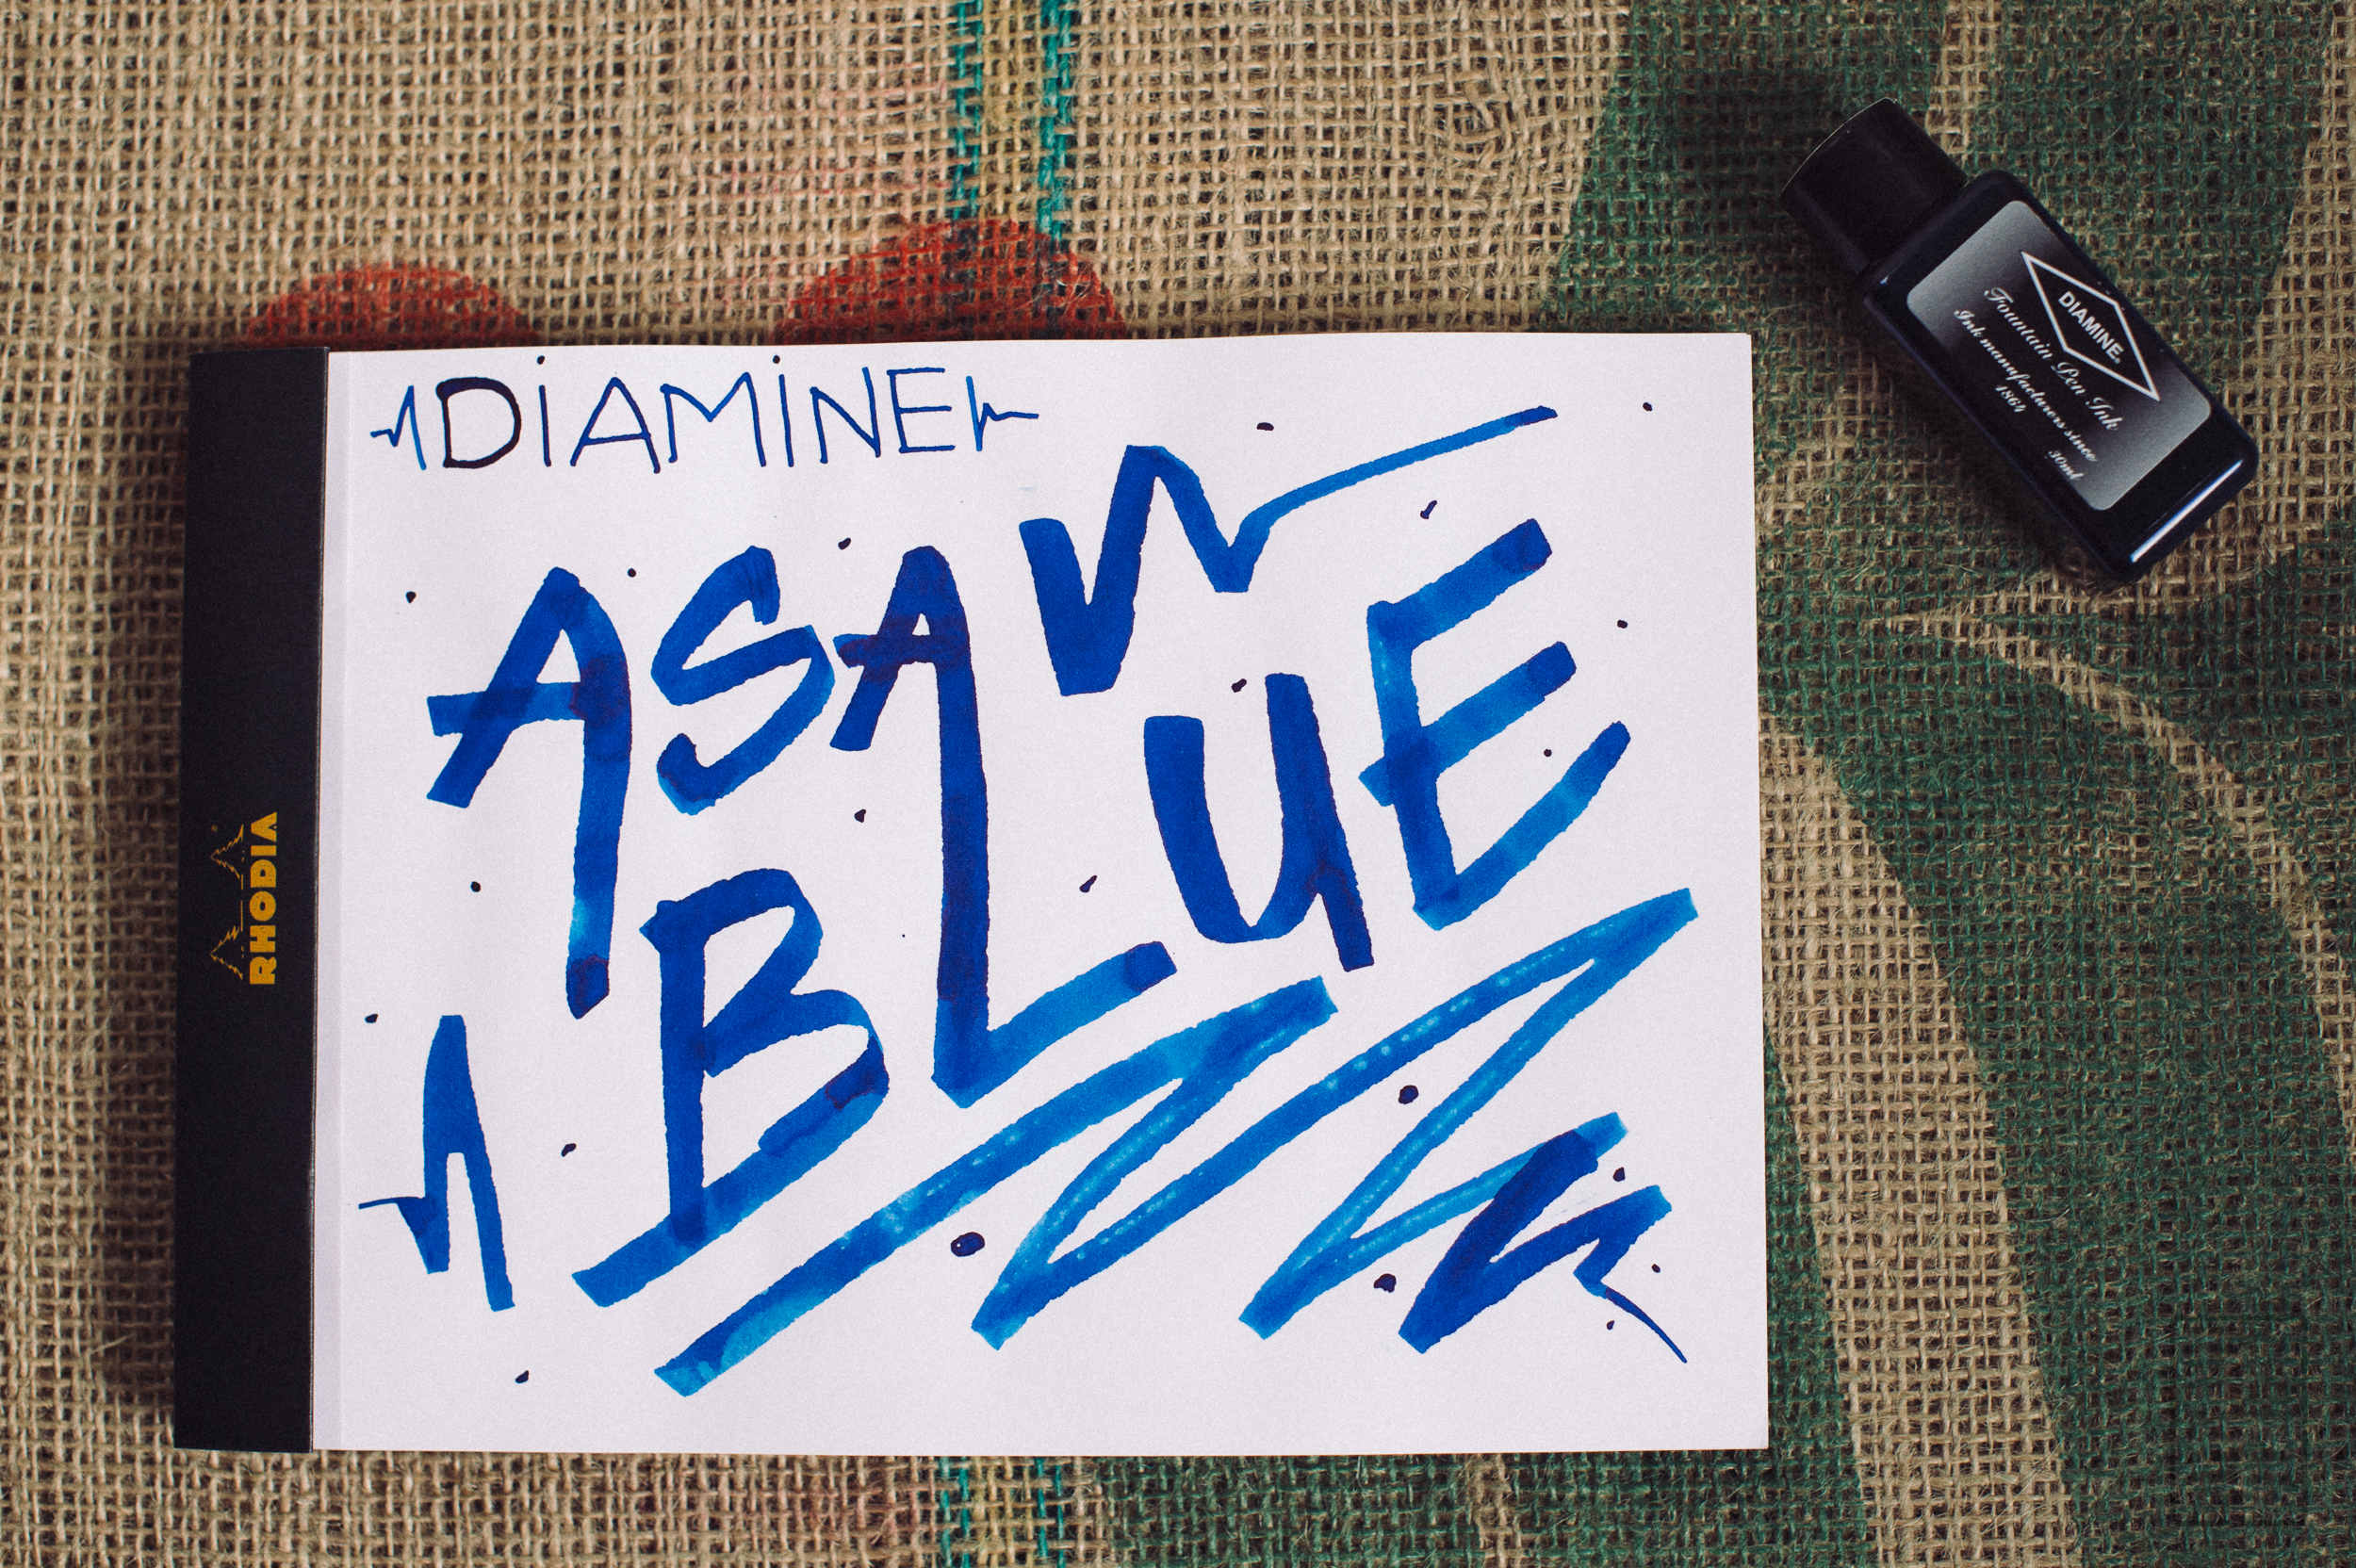 Diamine Asa Blue Ink Review